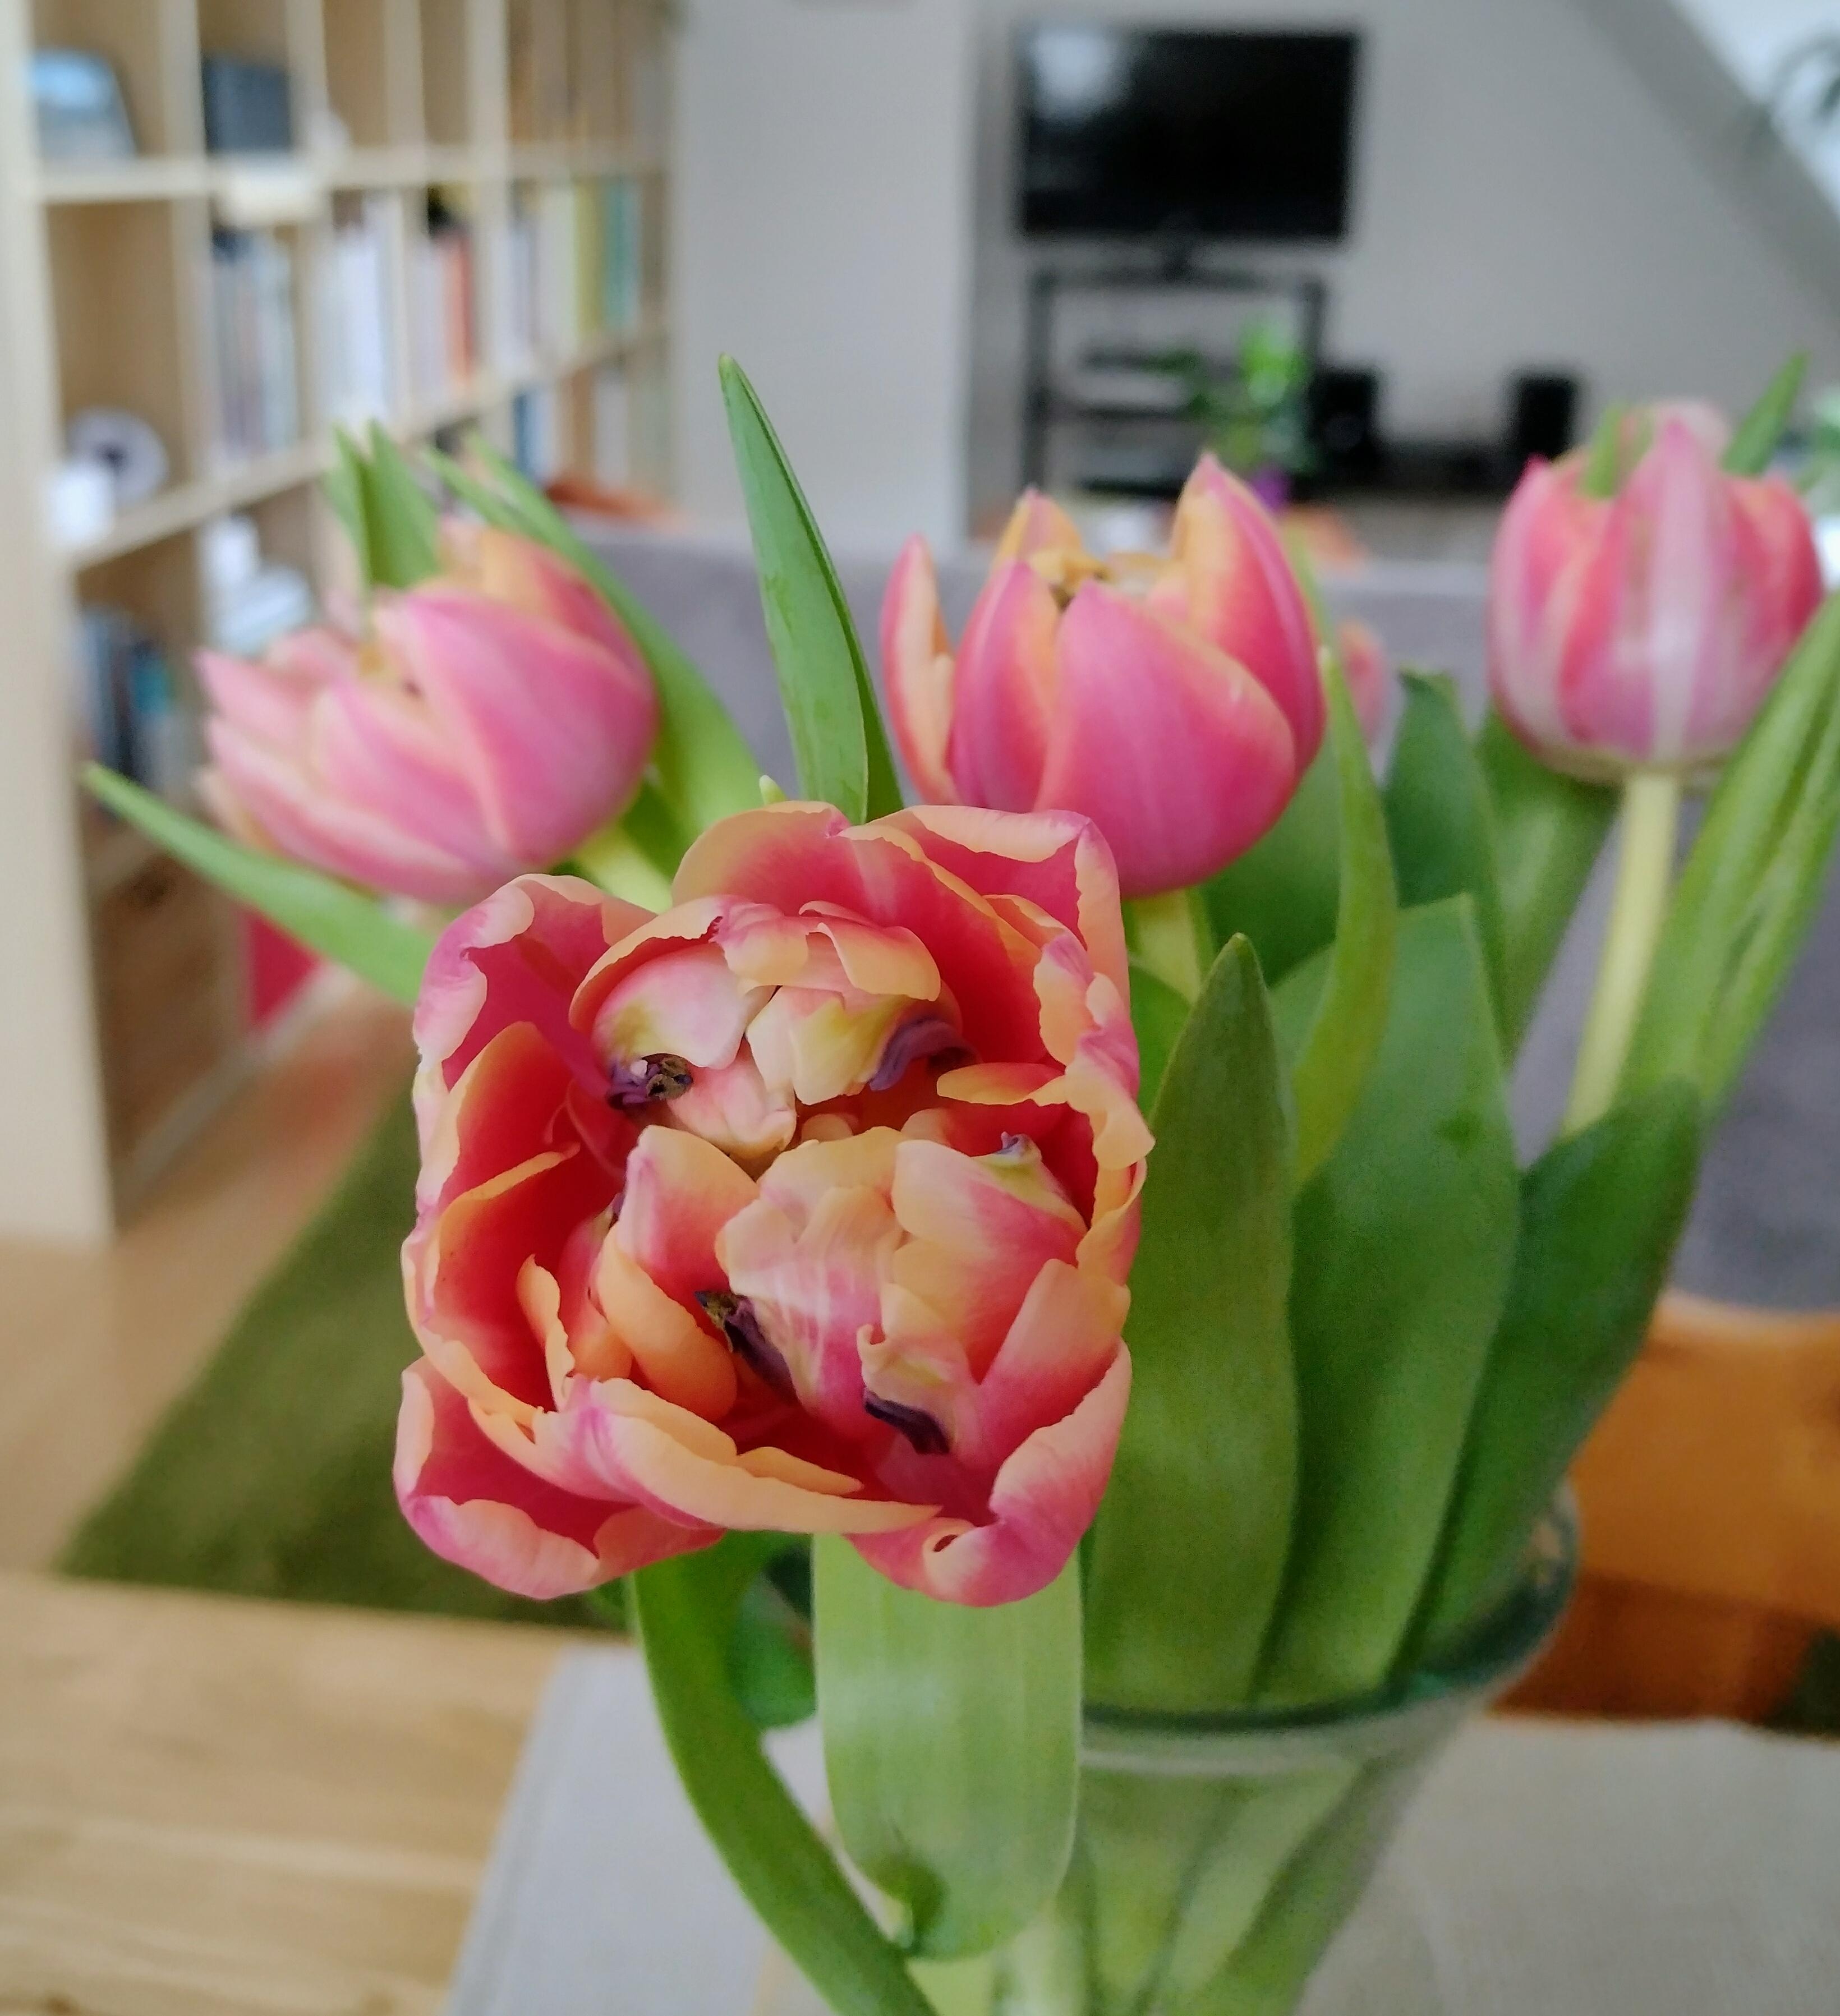 #tulpen #tulpenliebe #frischeblumen #details #blumenliebe